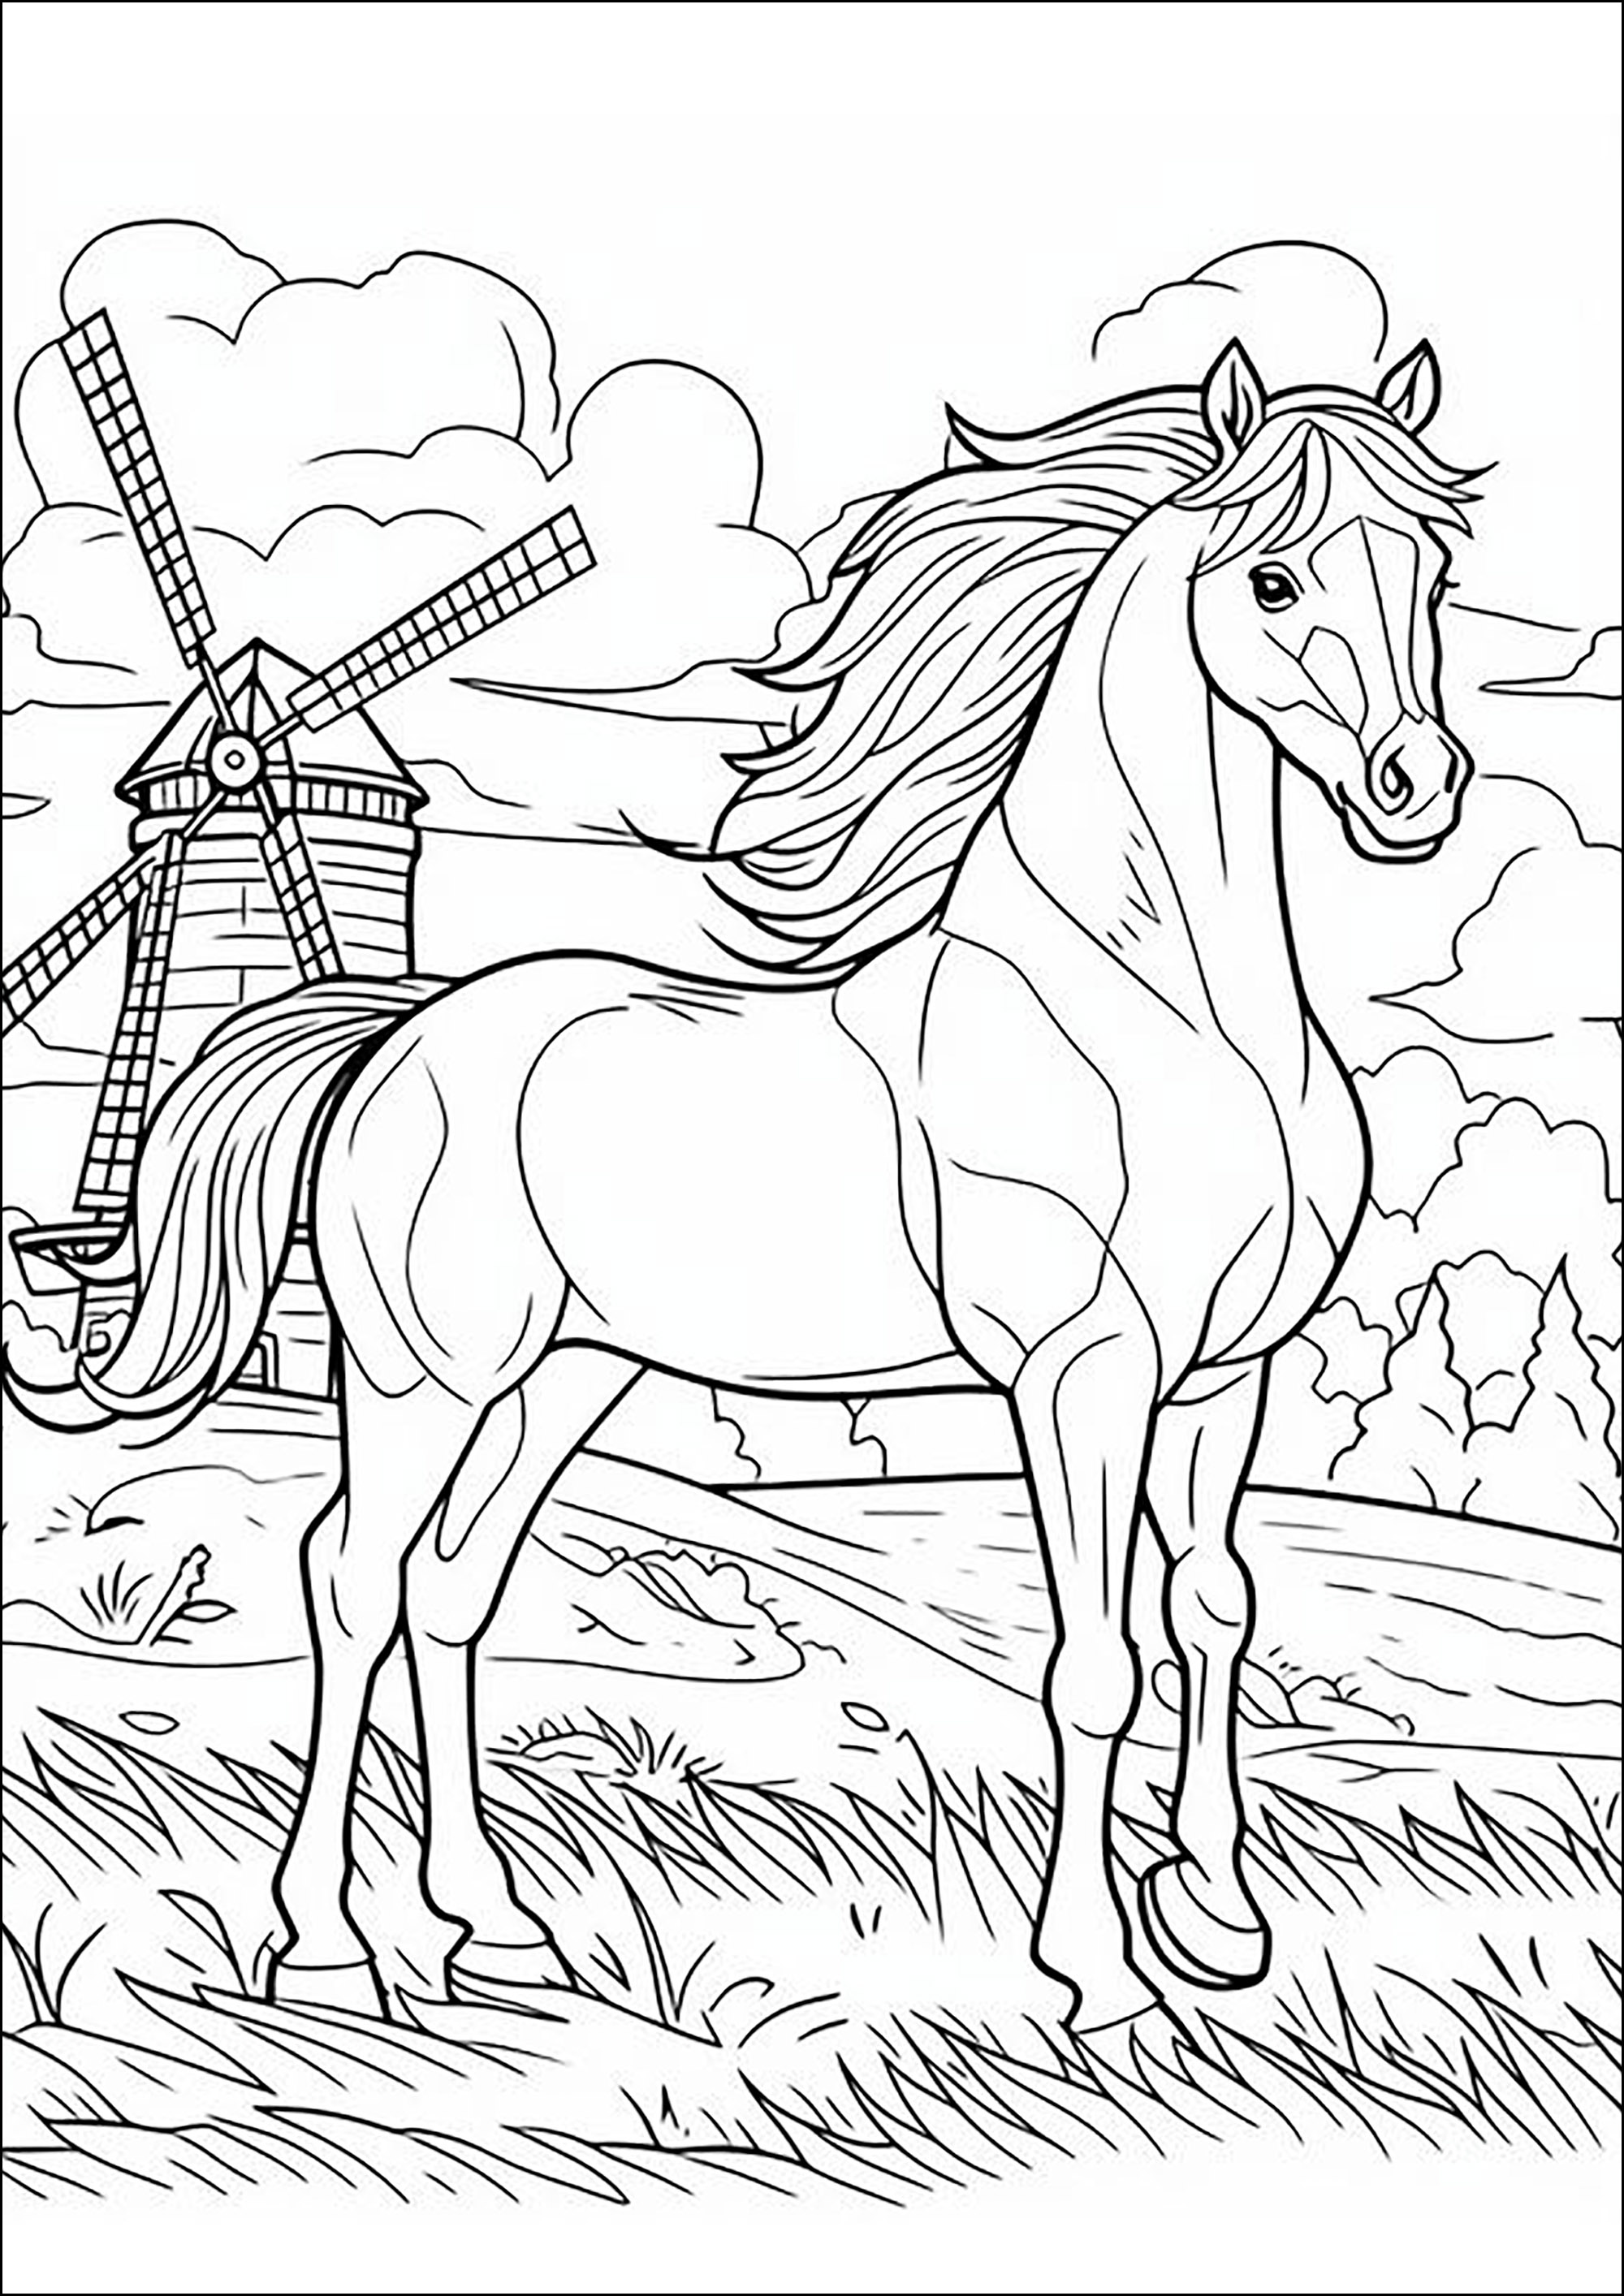 Cavalo com crina ao vento, com um moinho de vento em fundo. Uma página para colorir inspiradora